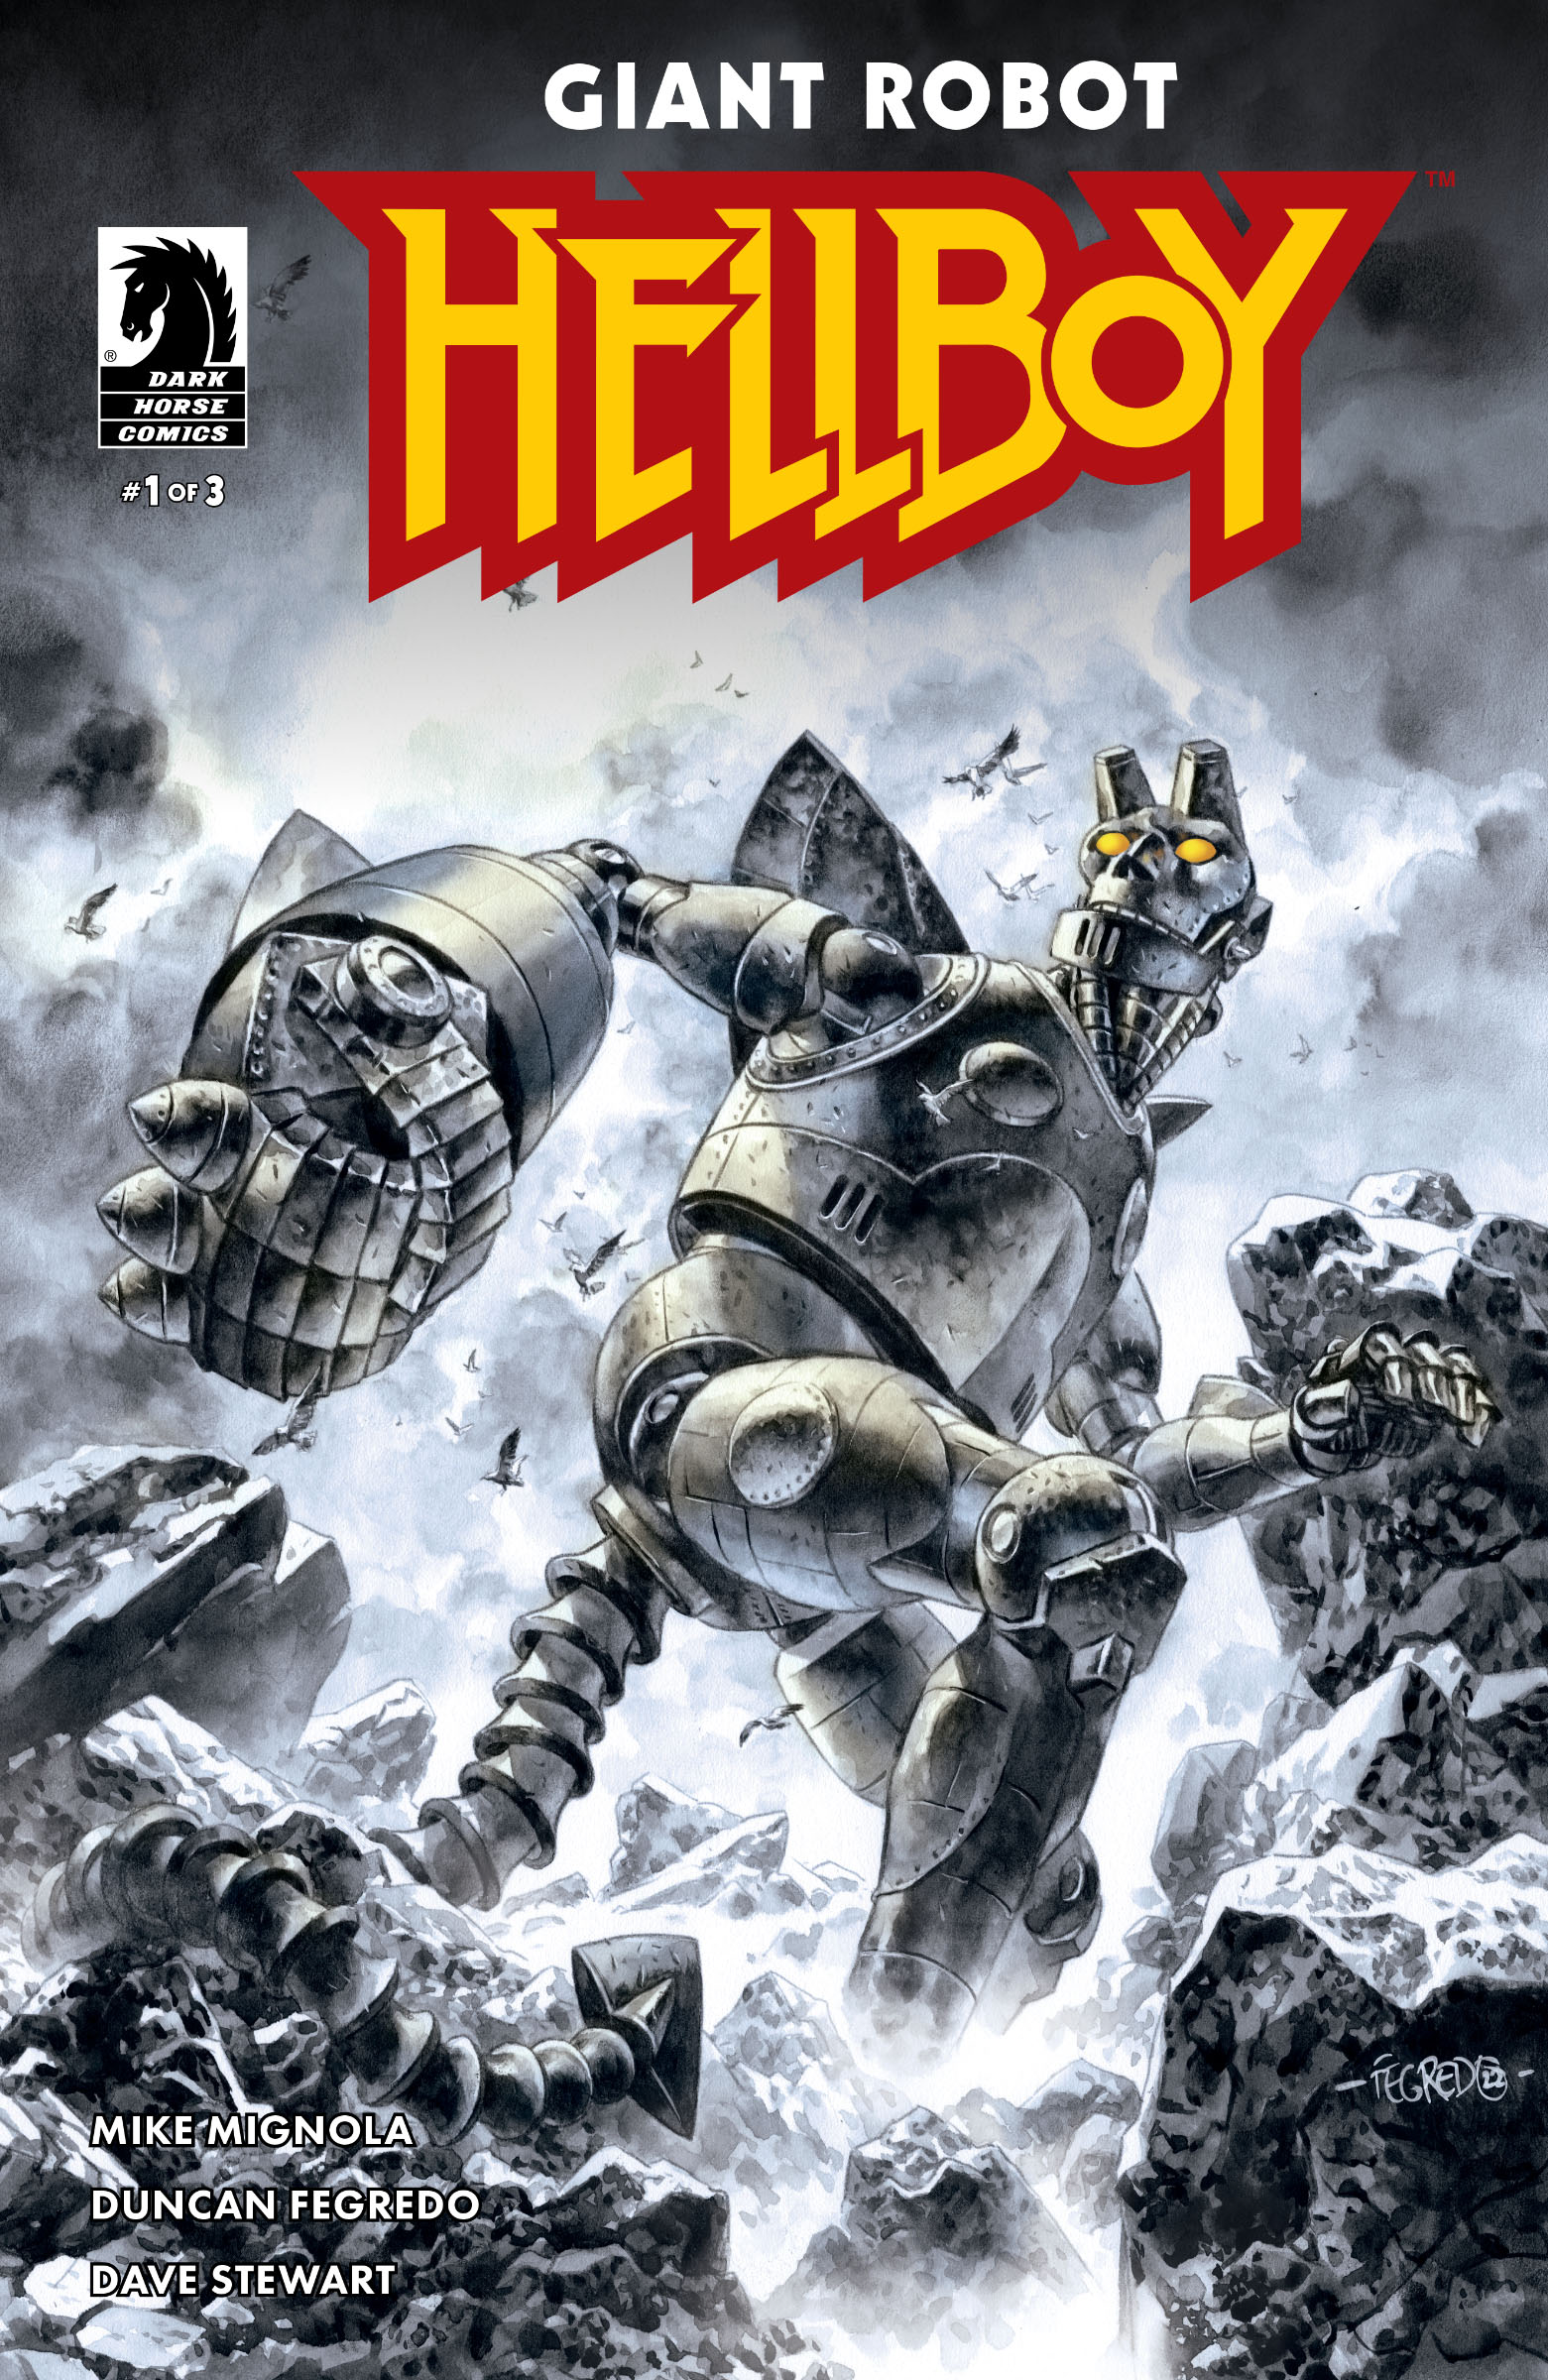 Coperta de la Giant Robot Hellboy #1